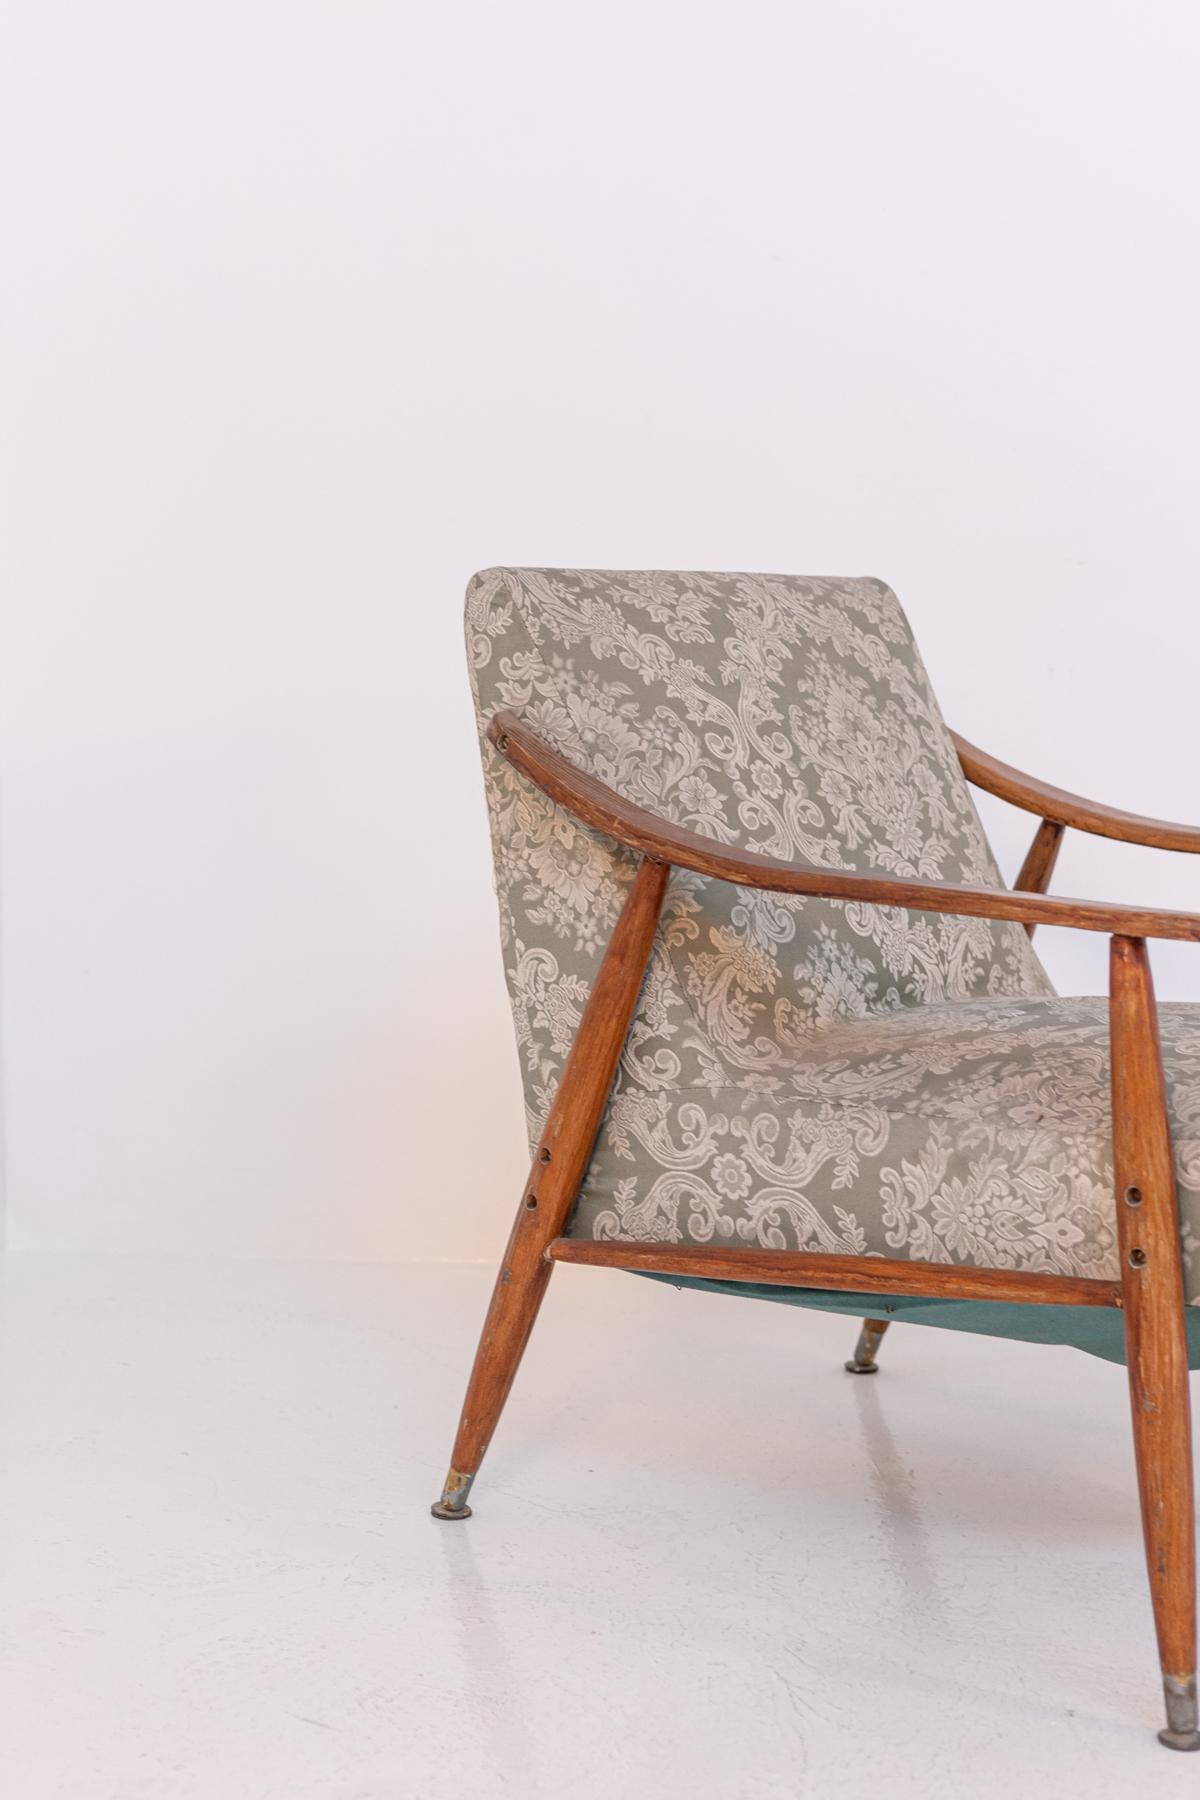 Rare fauteuil nordique des années 50. La structure est en bois. Ses lignes typiquement nordiques et son design scandinave confèrent au siège modernité et essentialité, en fait son design essentiel est parfait pour tout type de salon. L'assise et le